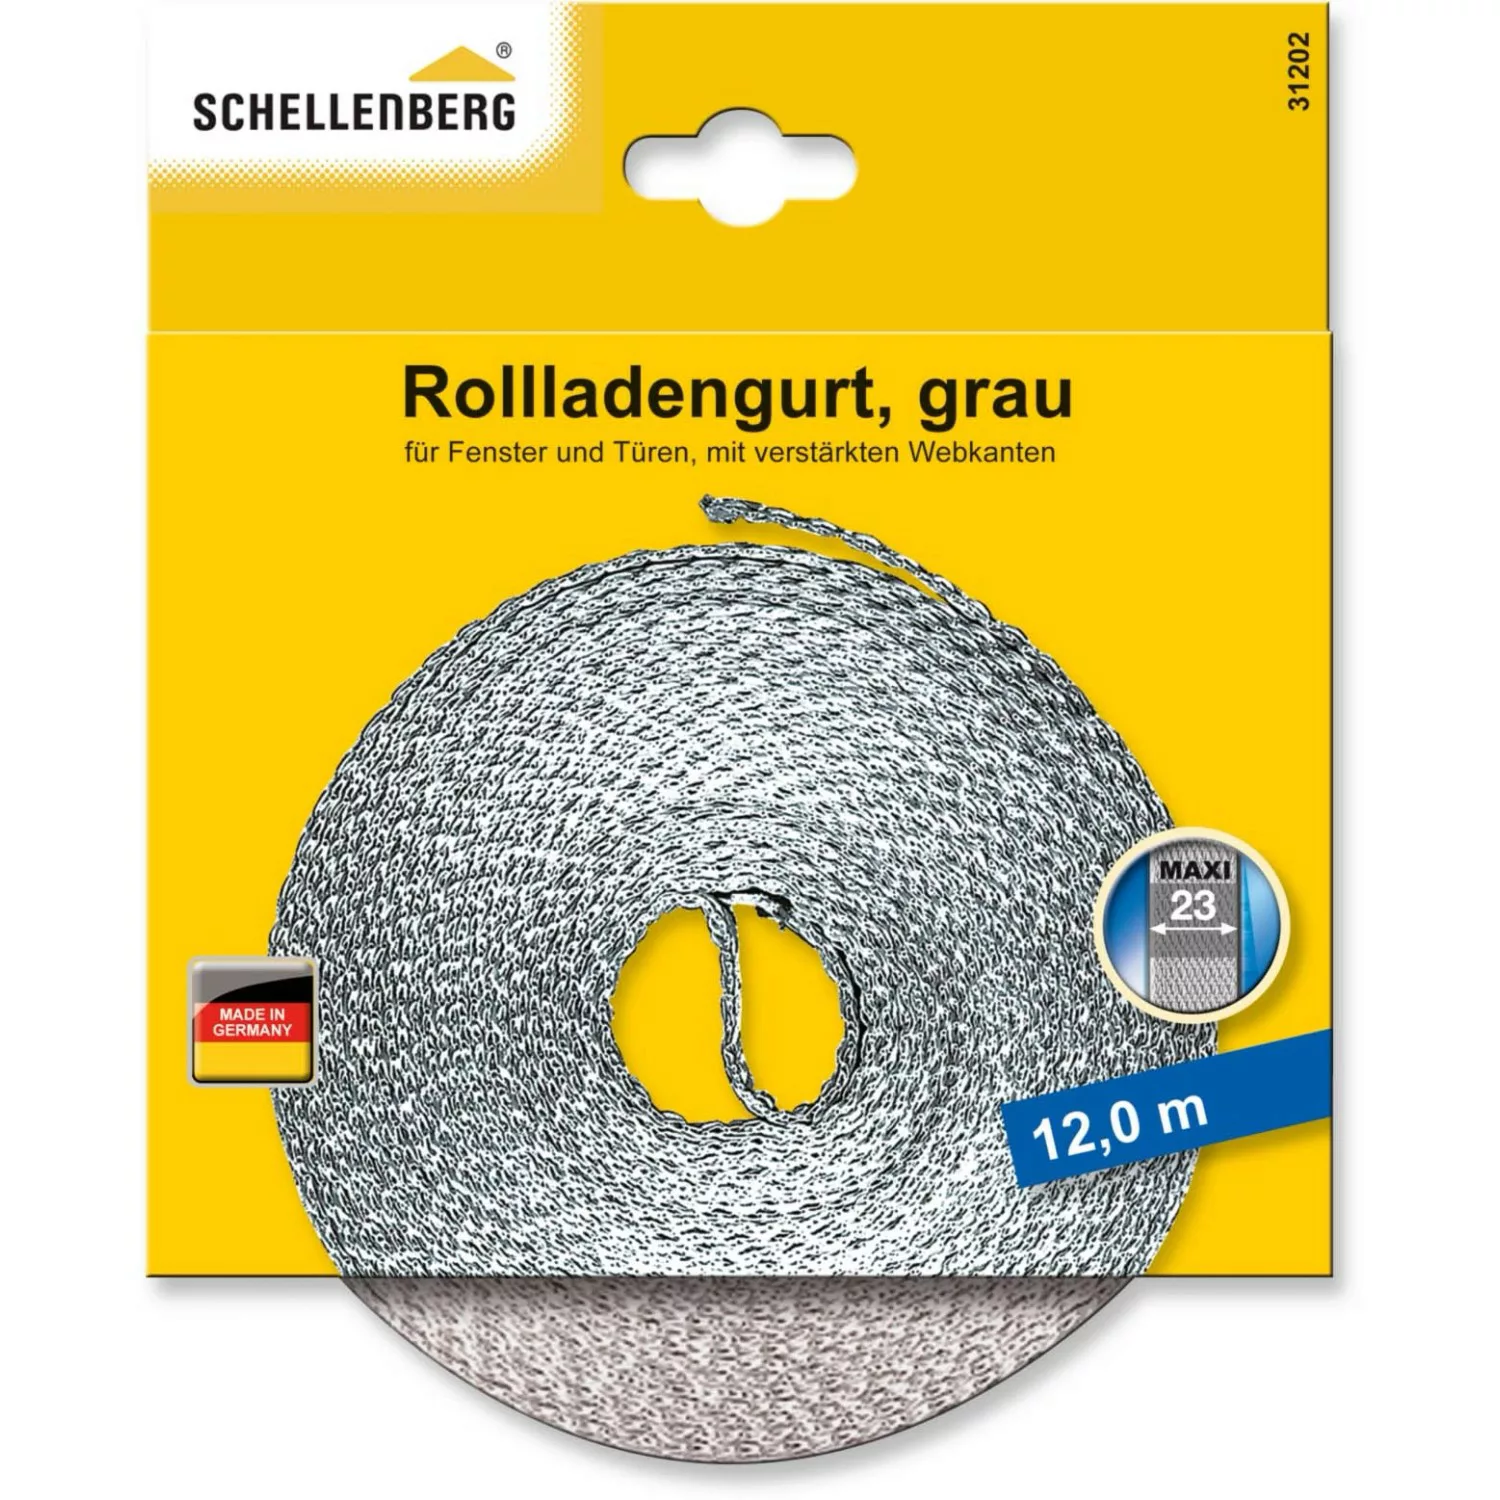 Schellenberg Rollladengurt Maxi 23 mm 12 m Grau günstig online kaufen